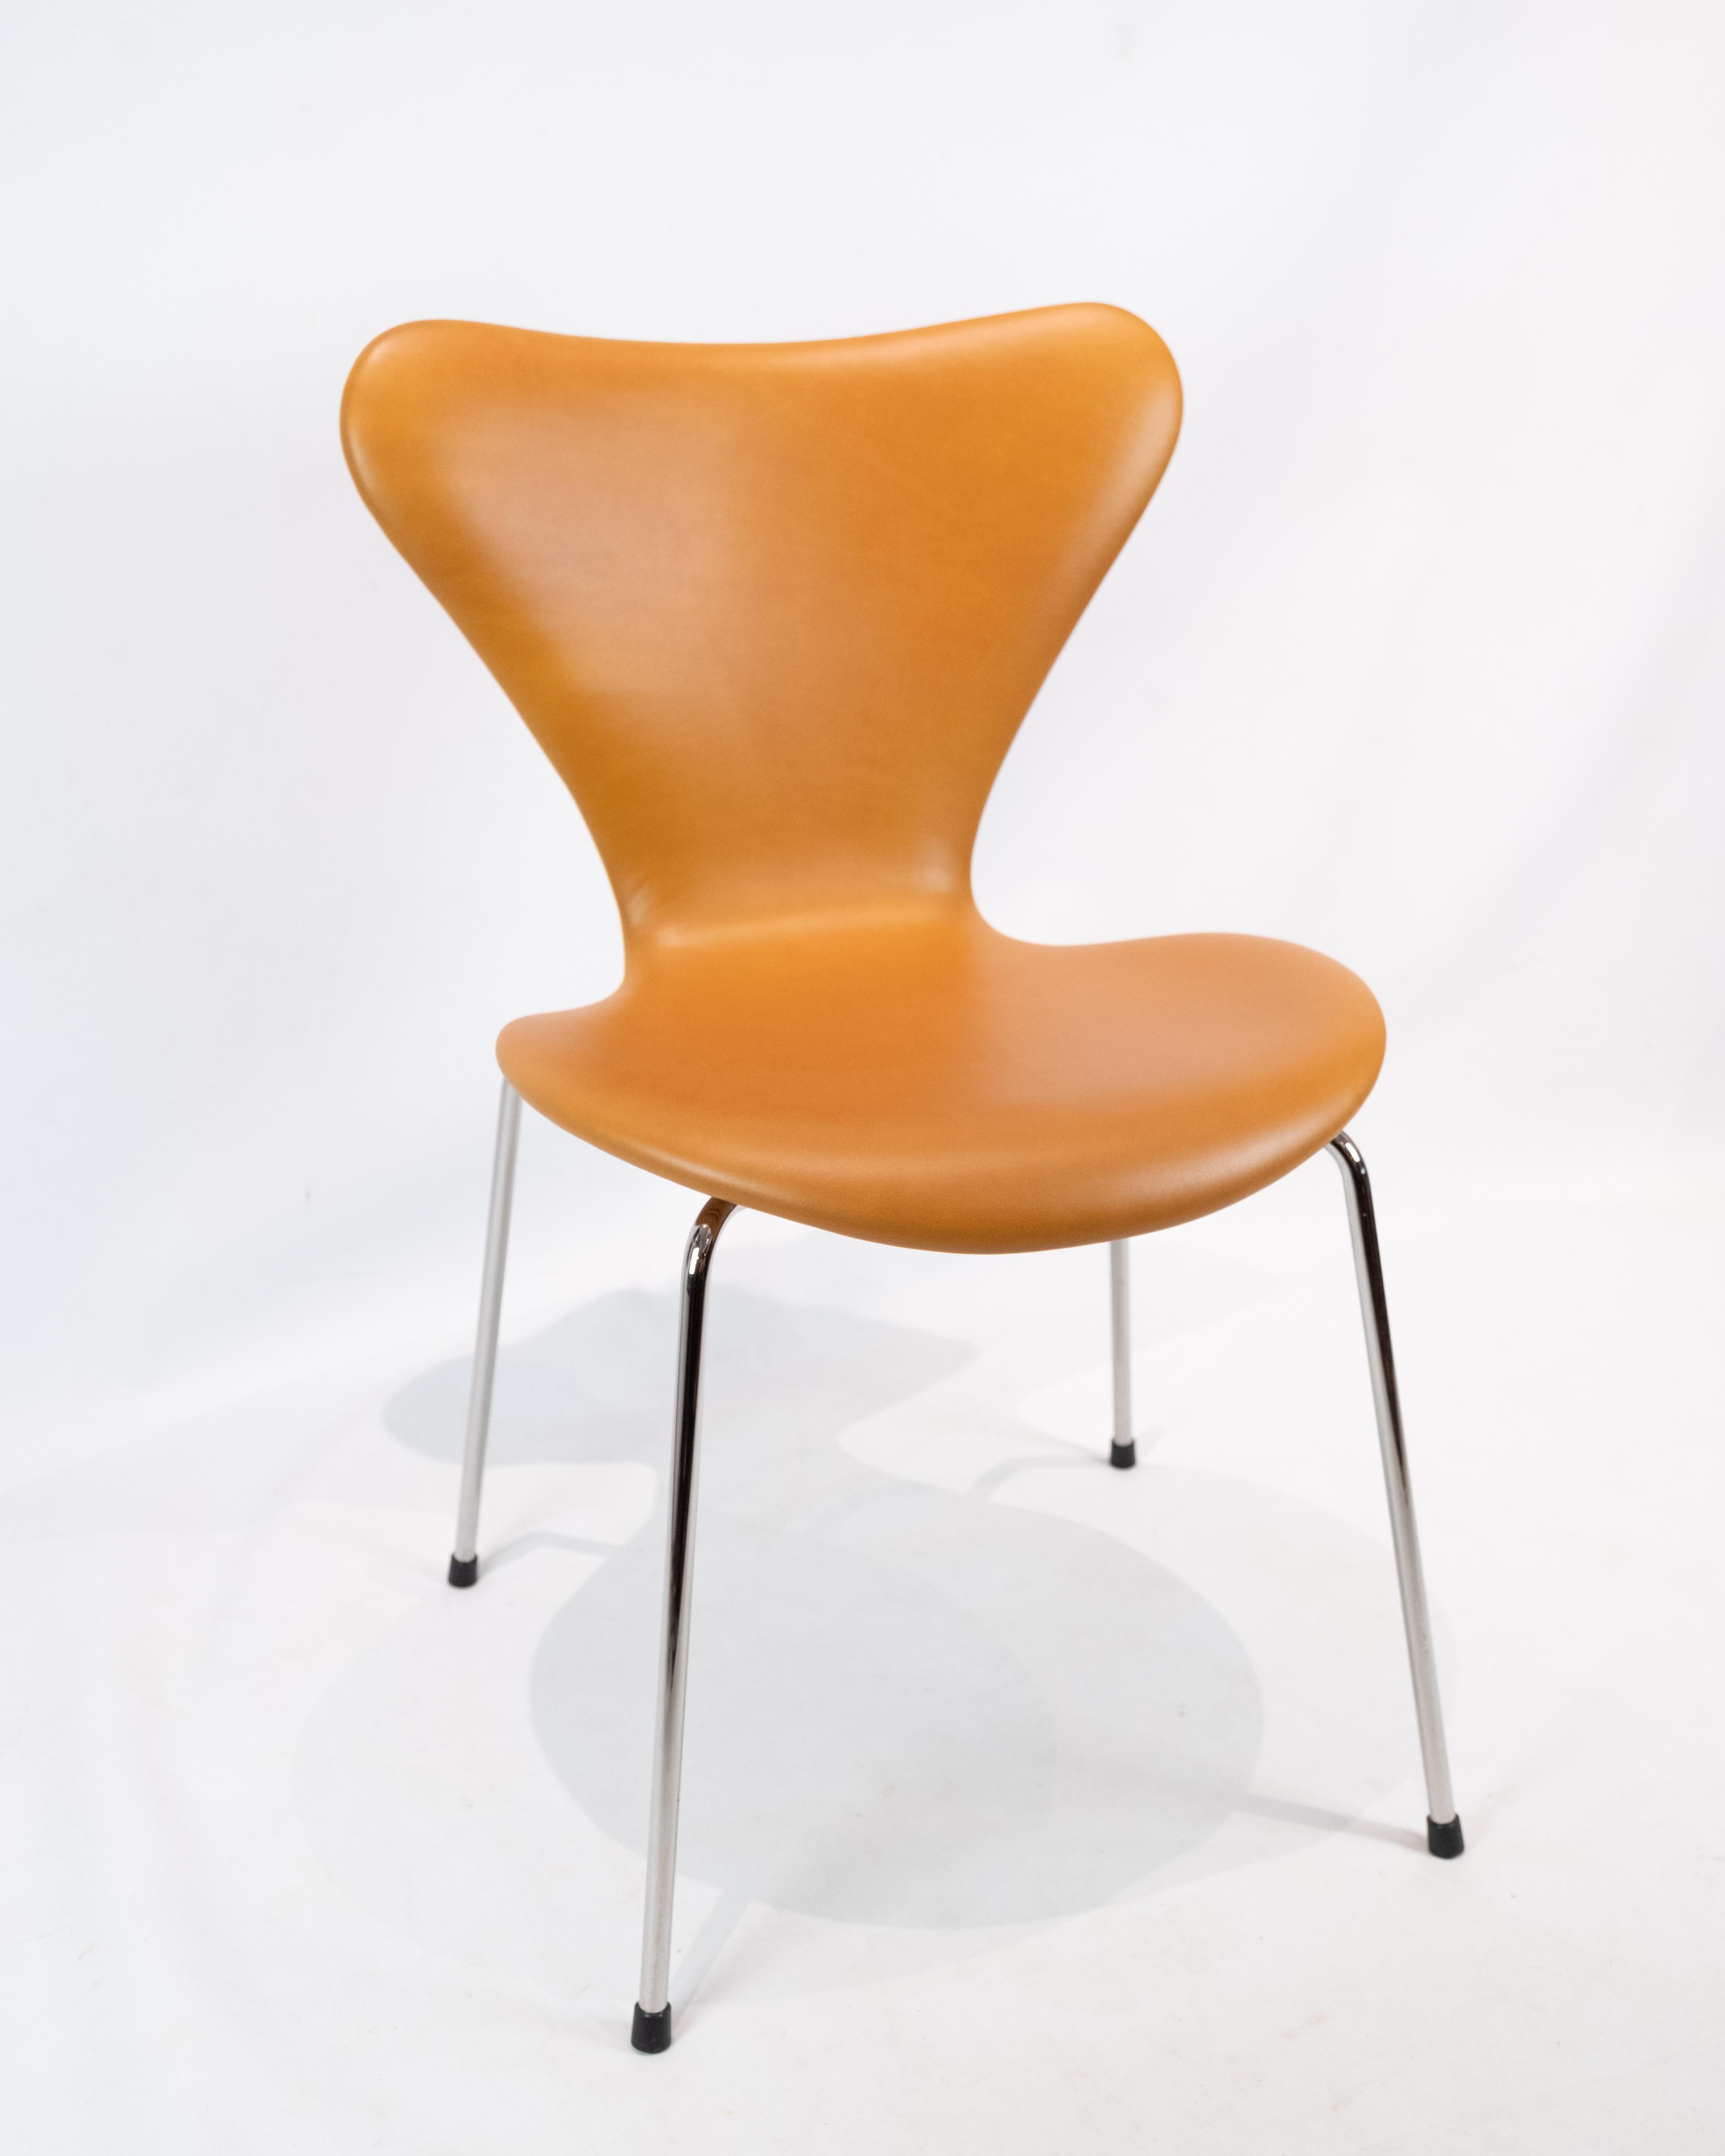 Exquis ensemble de 6 chaises modèle 3107 d'Arne Jacobsen, fabriquées par Fritz Hansen, élégamment revêtues d'un somptueux cuir classique cognac.

Ces chaises emblématiques, qui témoignent du design visionnaire de Jacobsen et du savoir-faire